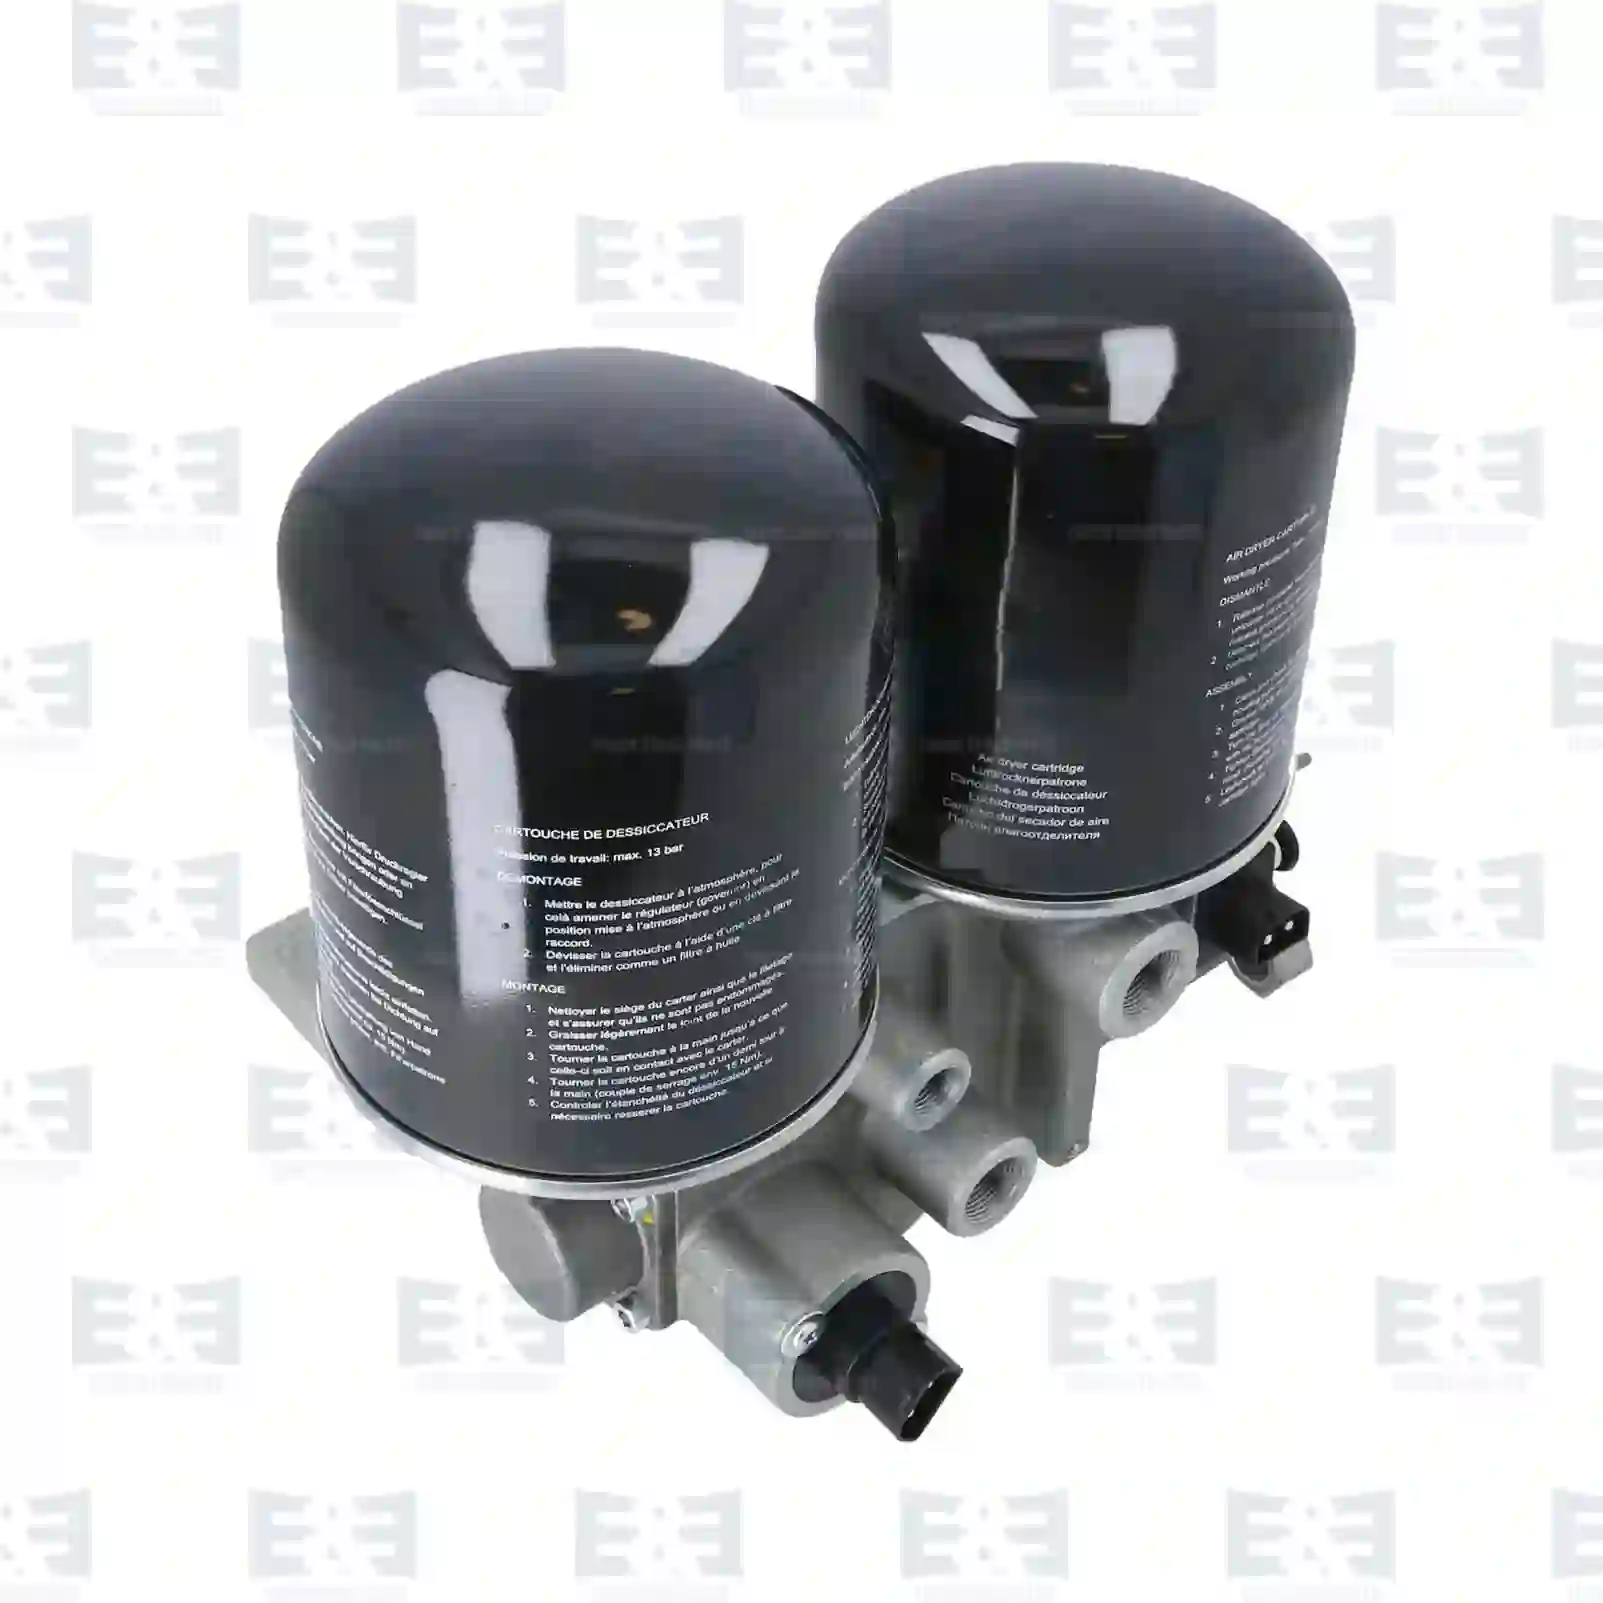  Air dryer || E&E Truck Spare Parts | Truck Spare Parts, Auotomotive Spare Parts